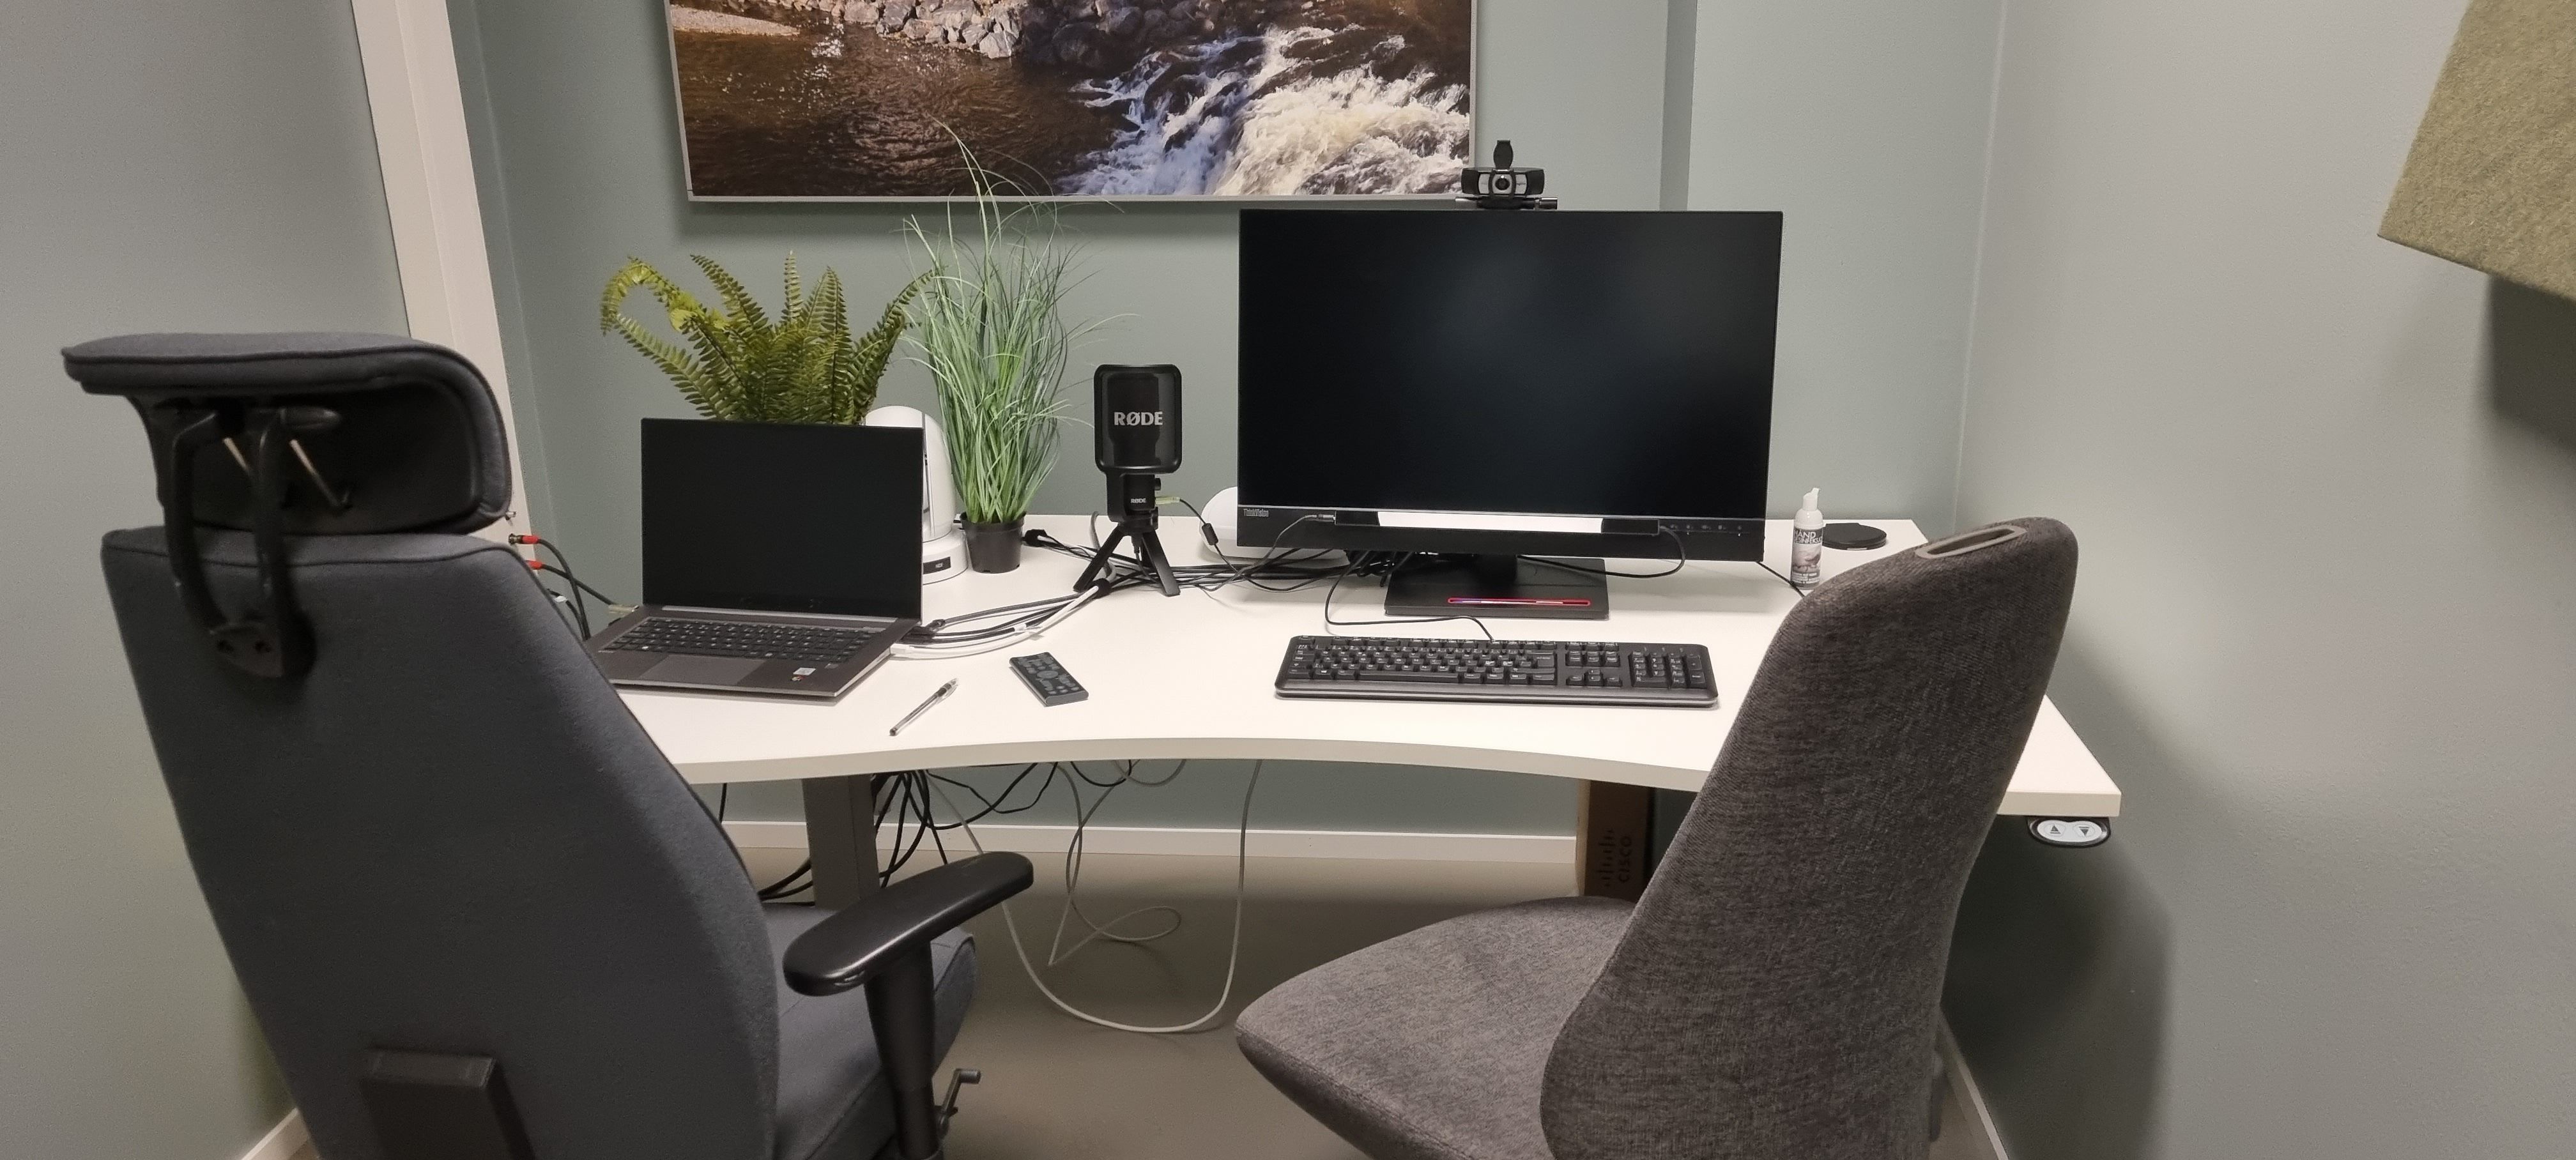 Bilde av testrom nummer 1 med to stoler, en laptop, en PC-skjerm, mikrofon og et kamera.